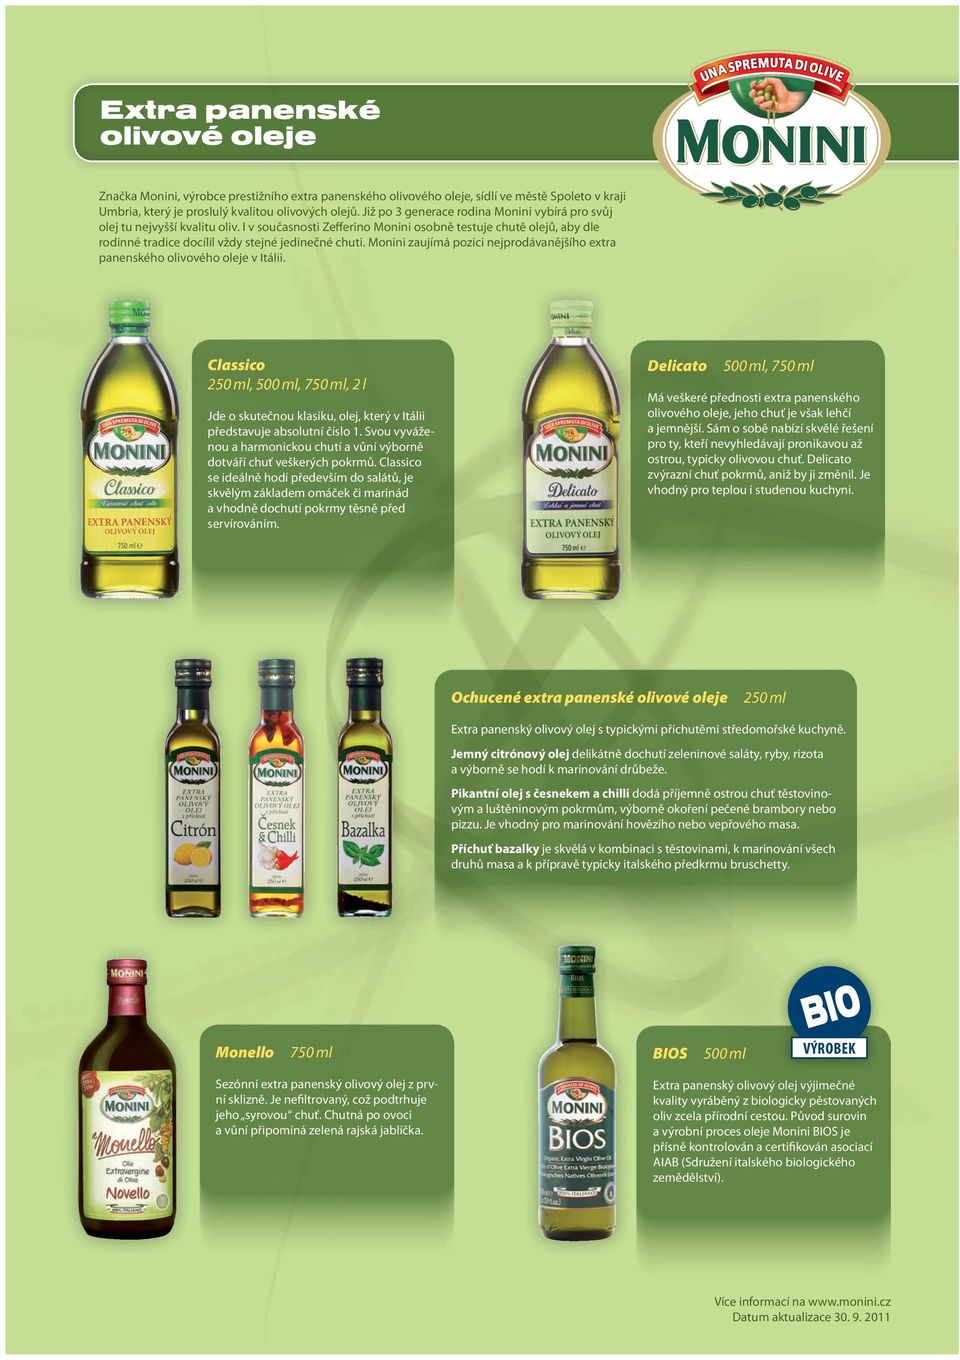 Monini zaujímá pozici nejprodávanějšího extra panenského olivového oleje v Itálii. Classico 250 ml, 500 ml, 750 ml, 2 l Jde o skutečnou klasiku, olej, který v Itálii představuje absolutní číslo 1.